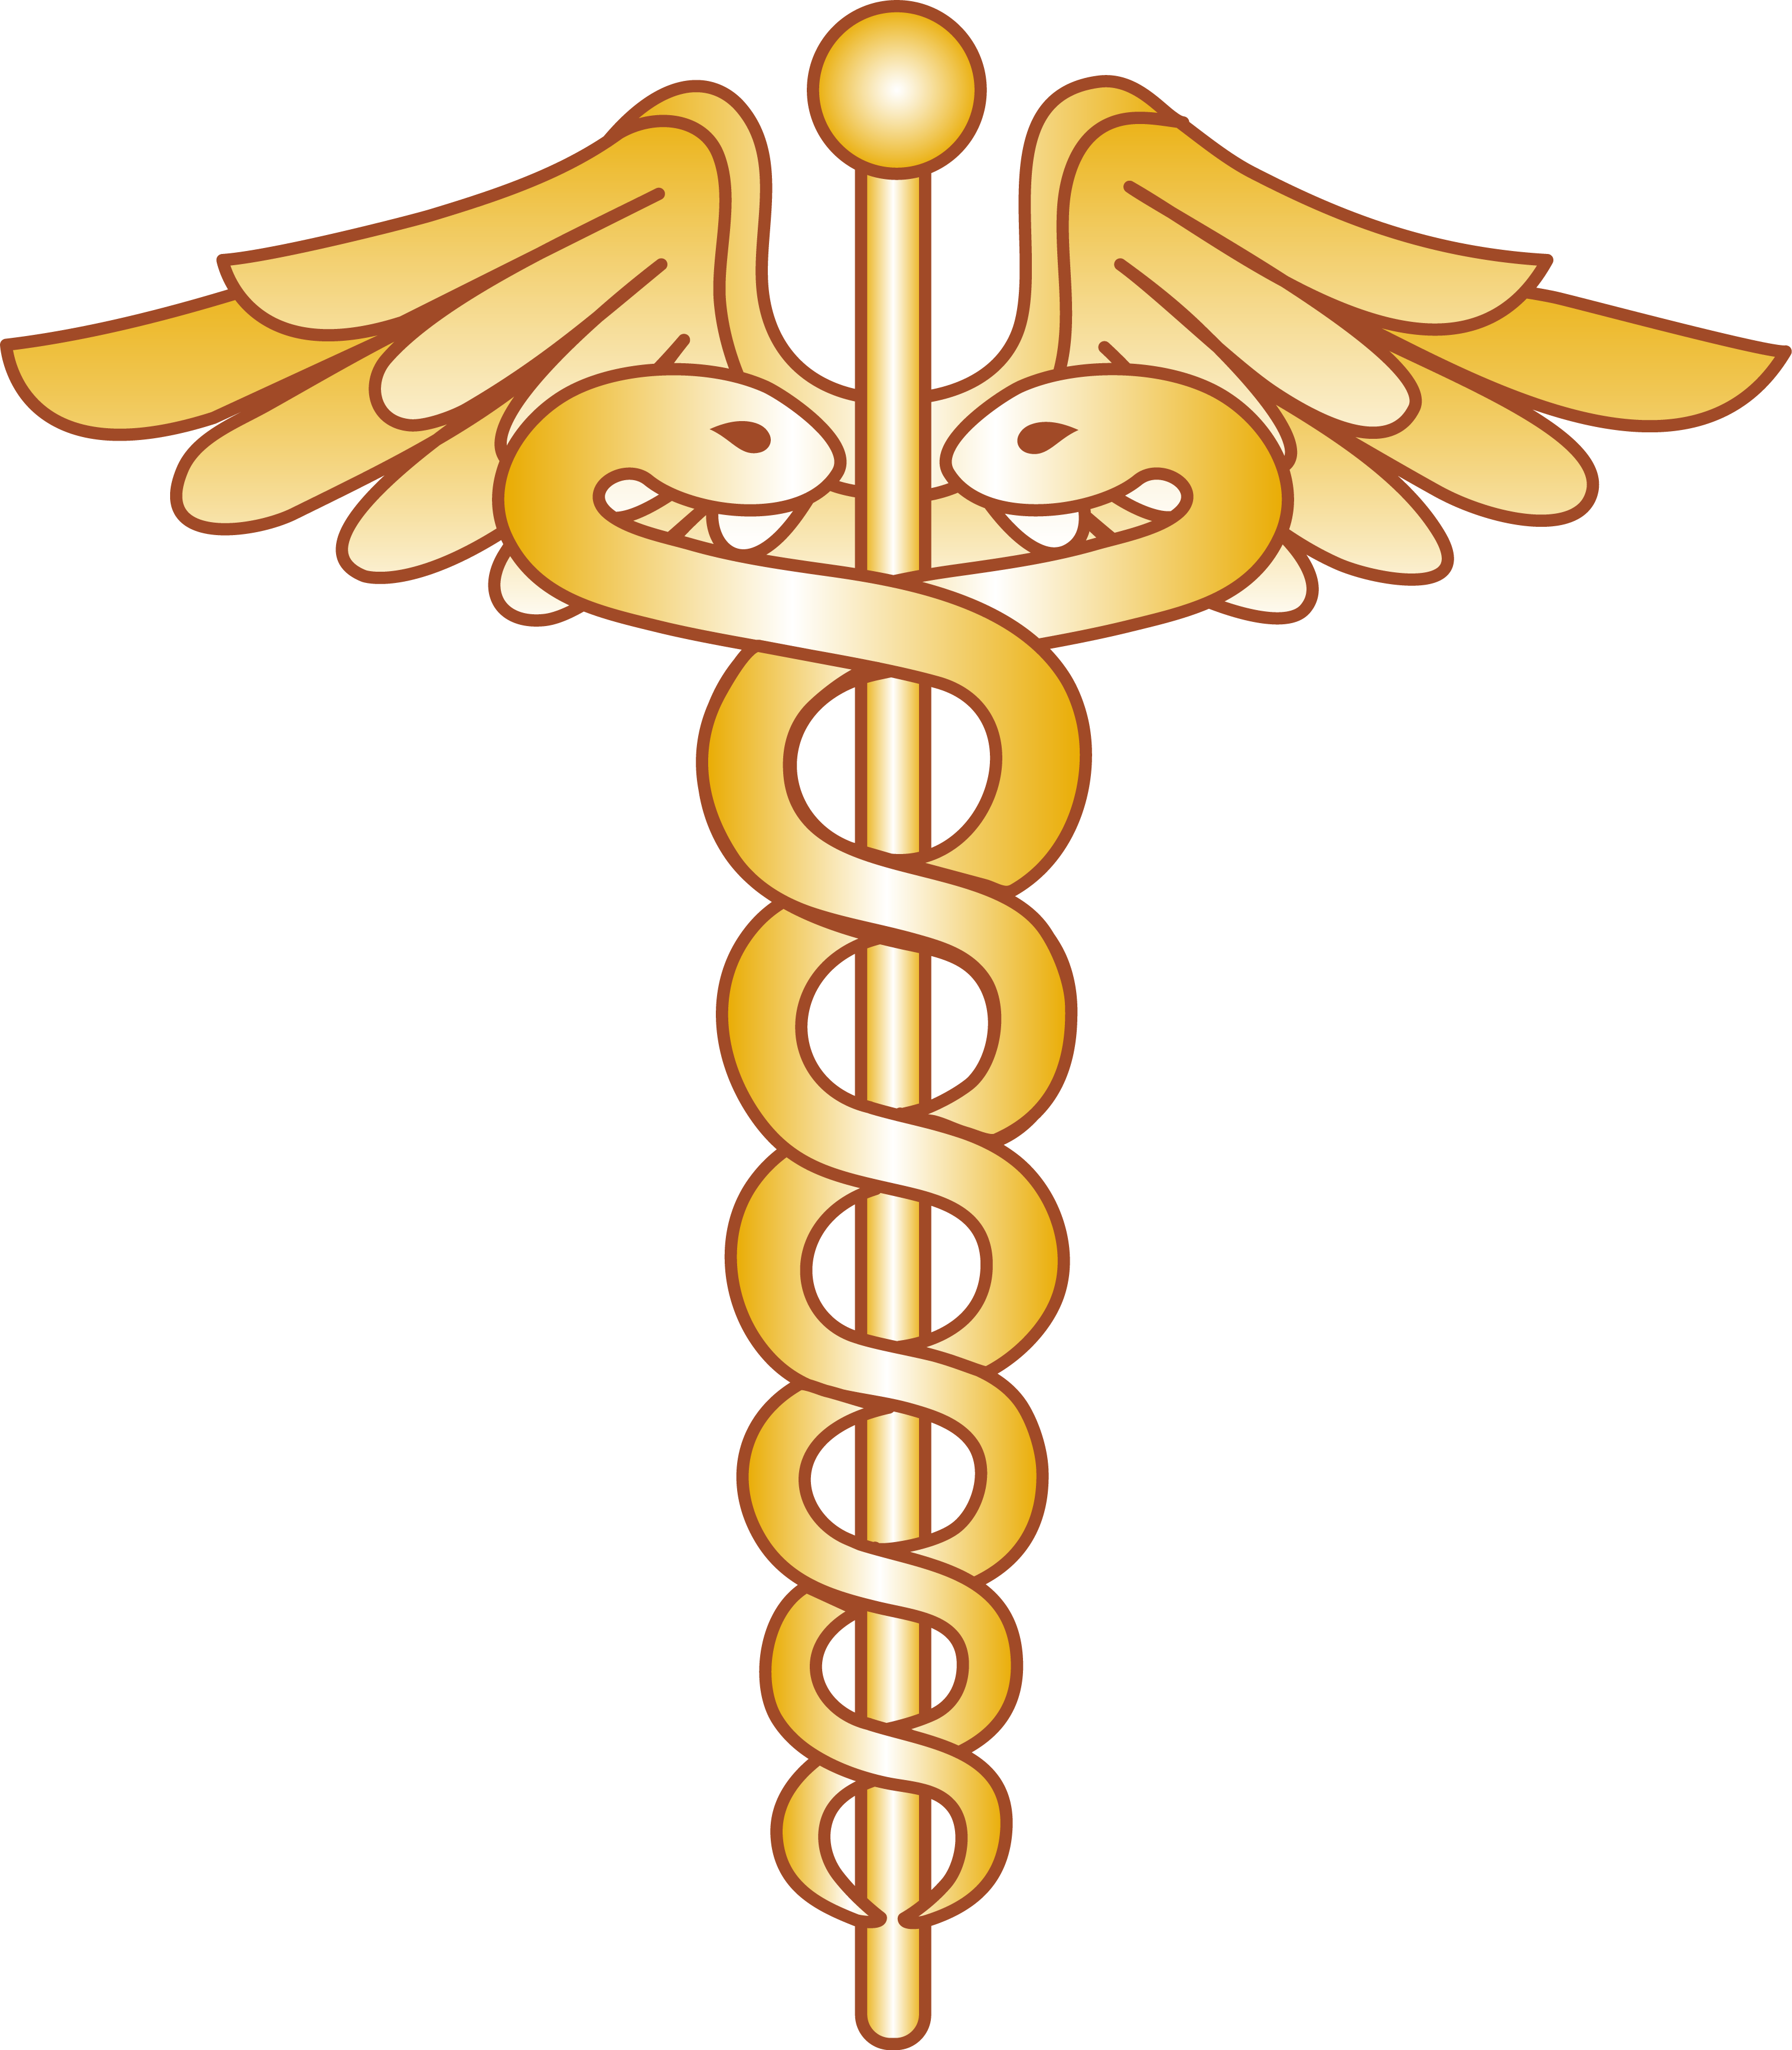 Health medicine snake symbol. Information clipart medical chart